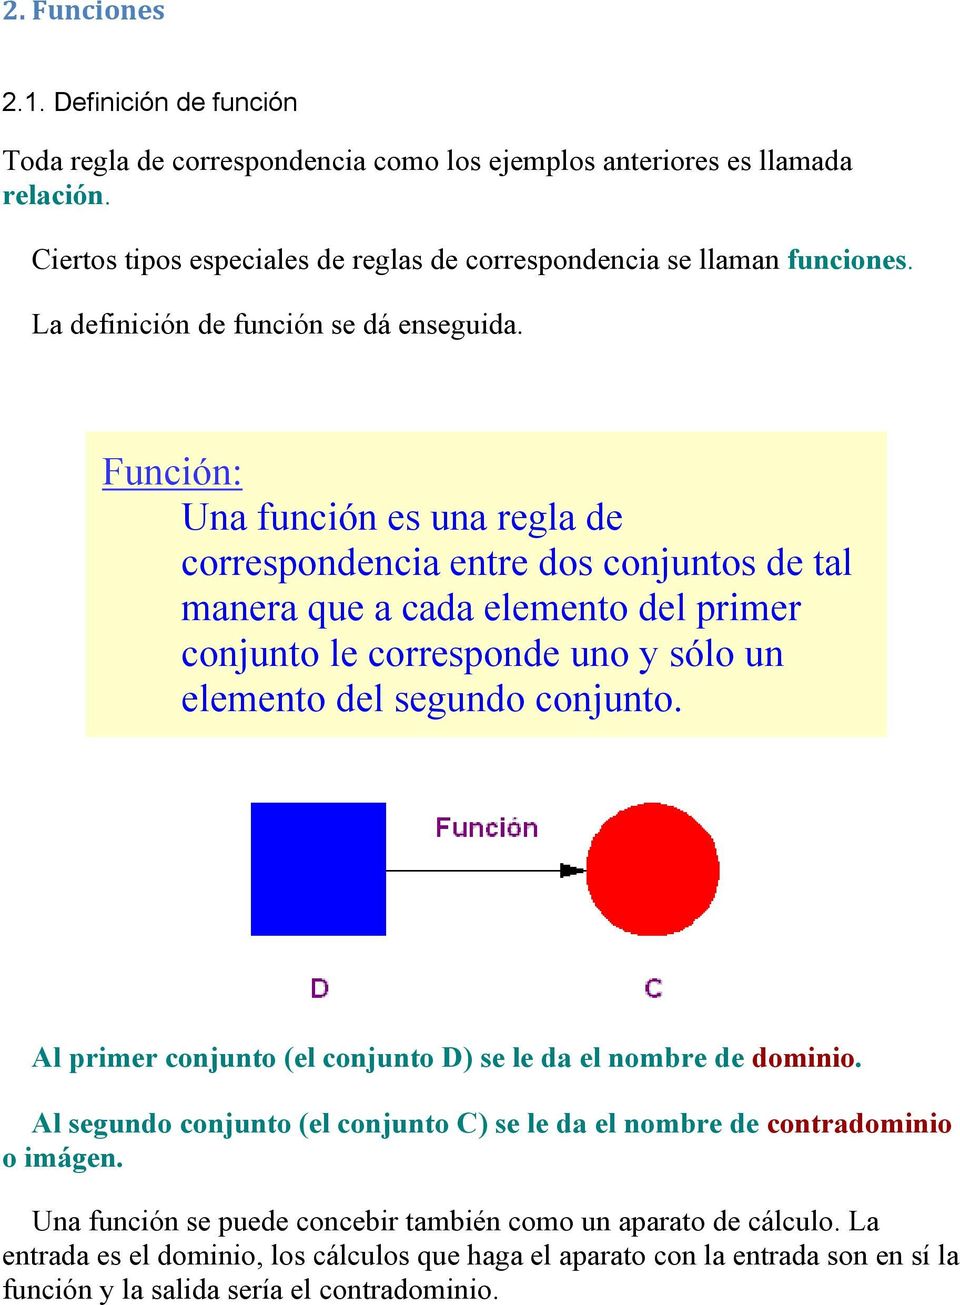 Función: Una función es una regla de correspondencia entre dos conjuntos de tal manera que a cada elemento del primer conjunto le corresponde uno y sólo un elemento del segundo conjunto.